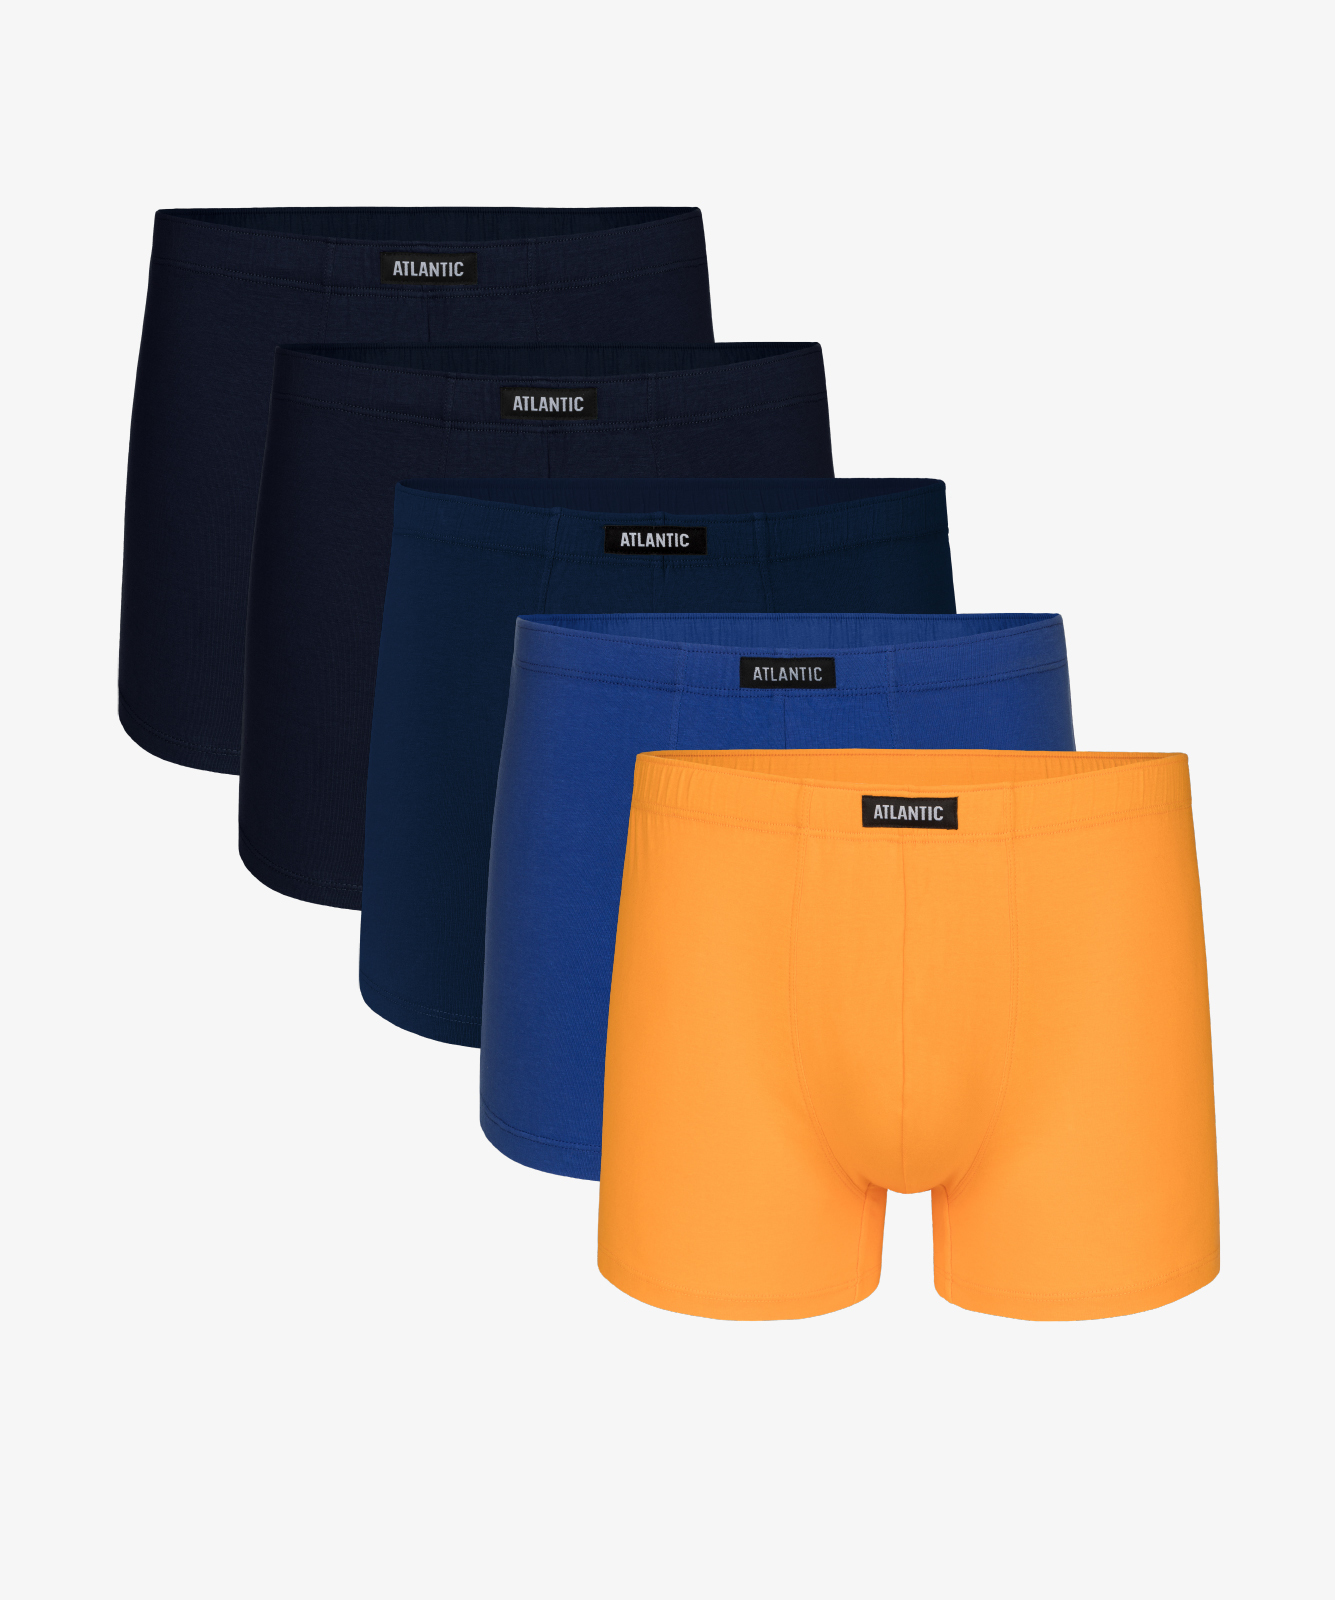 Мужские трусы шорты Atlantic, набор из 5 шт., хлопок, темно-бирюзовые + темно-синие + темно-голубые + желтые, 5SMH-002